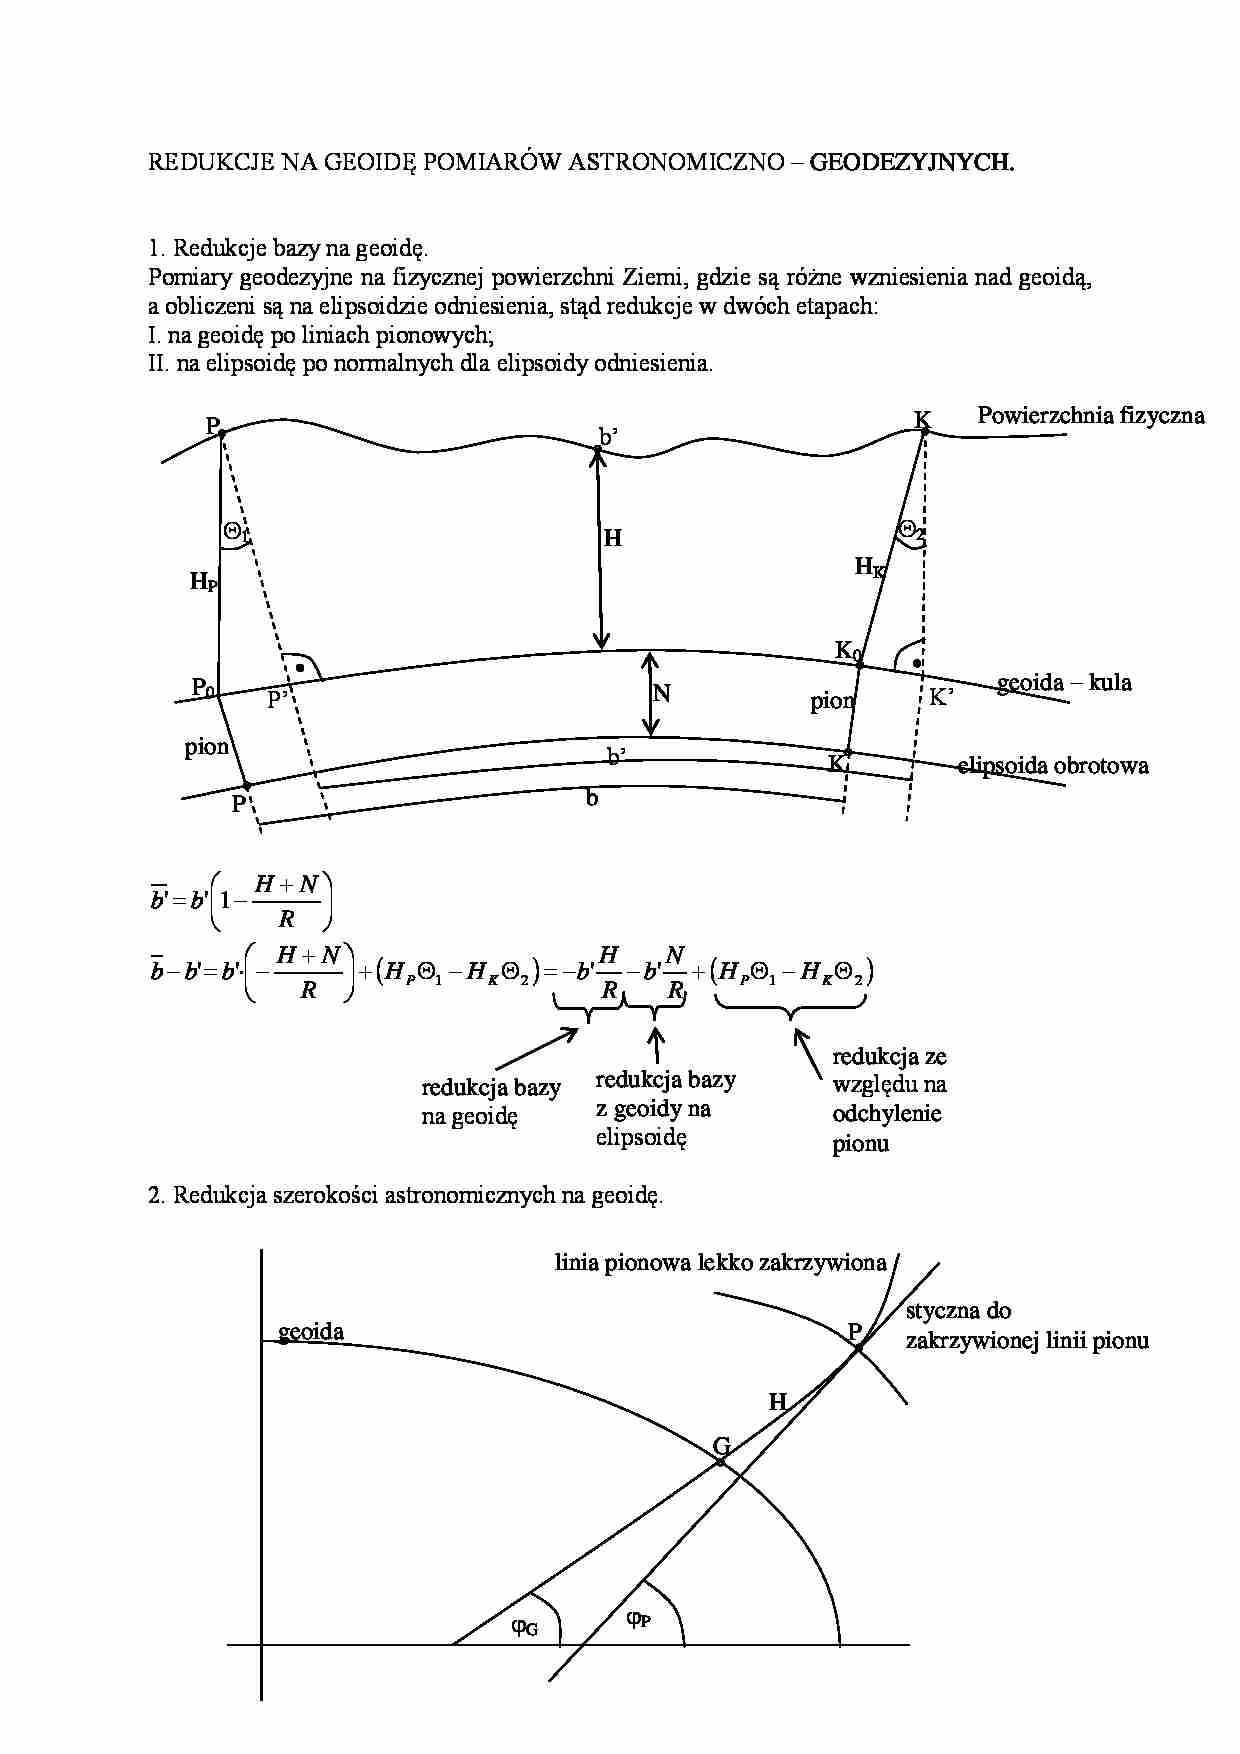 Redukcjena geoidę pomiarów astronomiczno- geodezyjnych - strona 1